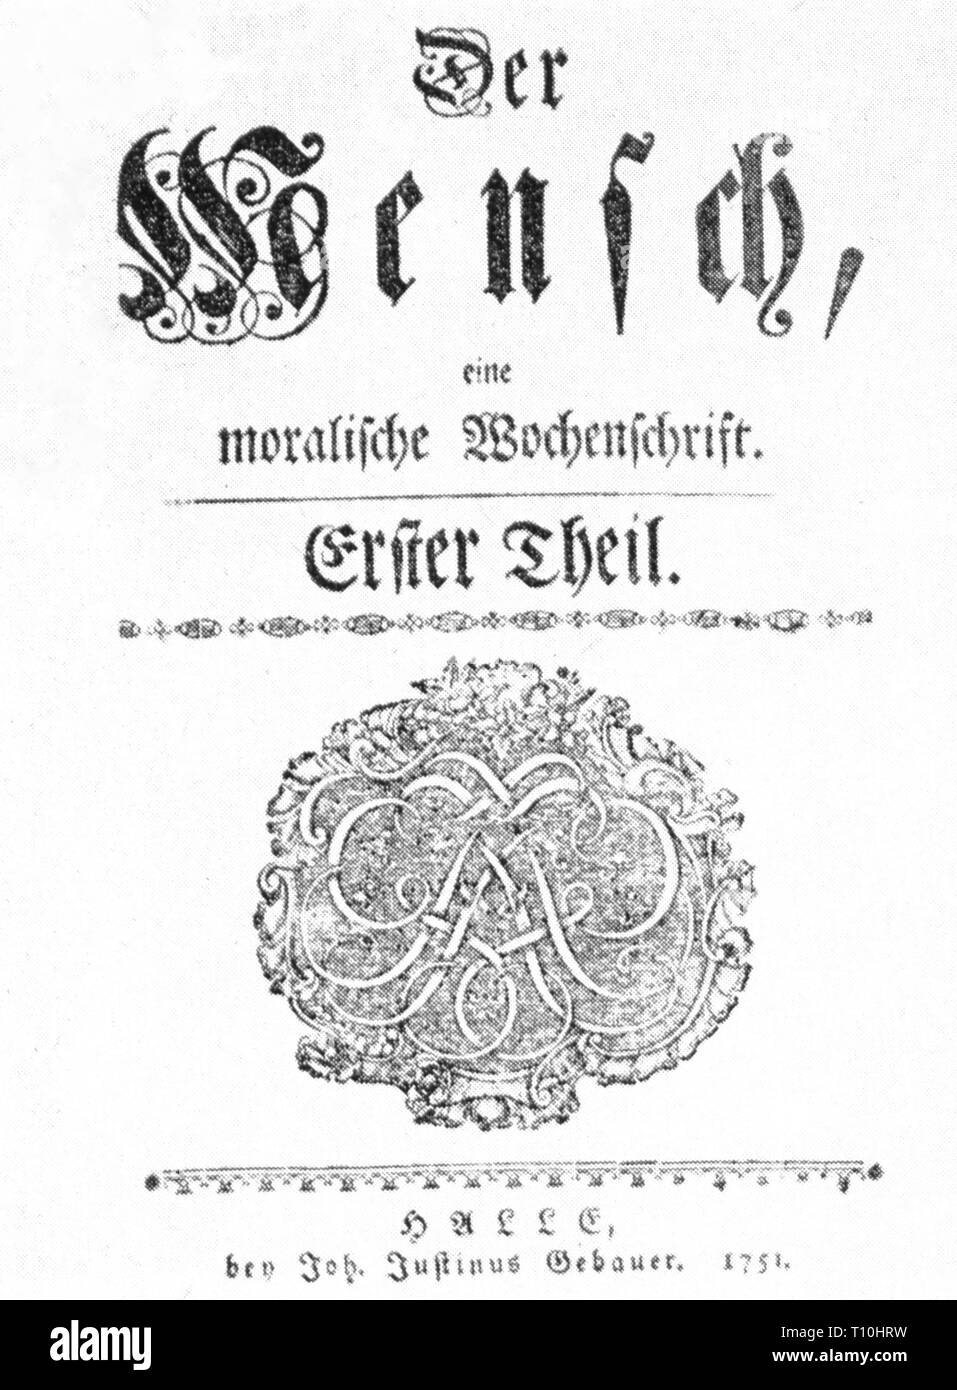 Presse/Medien, Zeitschriften, 'Der Mensch' (der Mensch), Titelseite, erster Teil, Halle, 1751, Artist's Urheberrecht nicht geklärt zu werden. Stockfoto